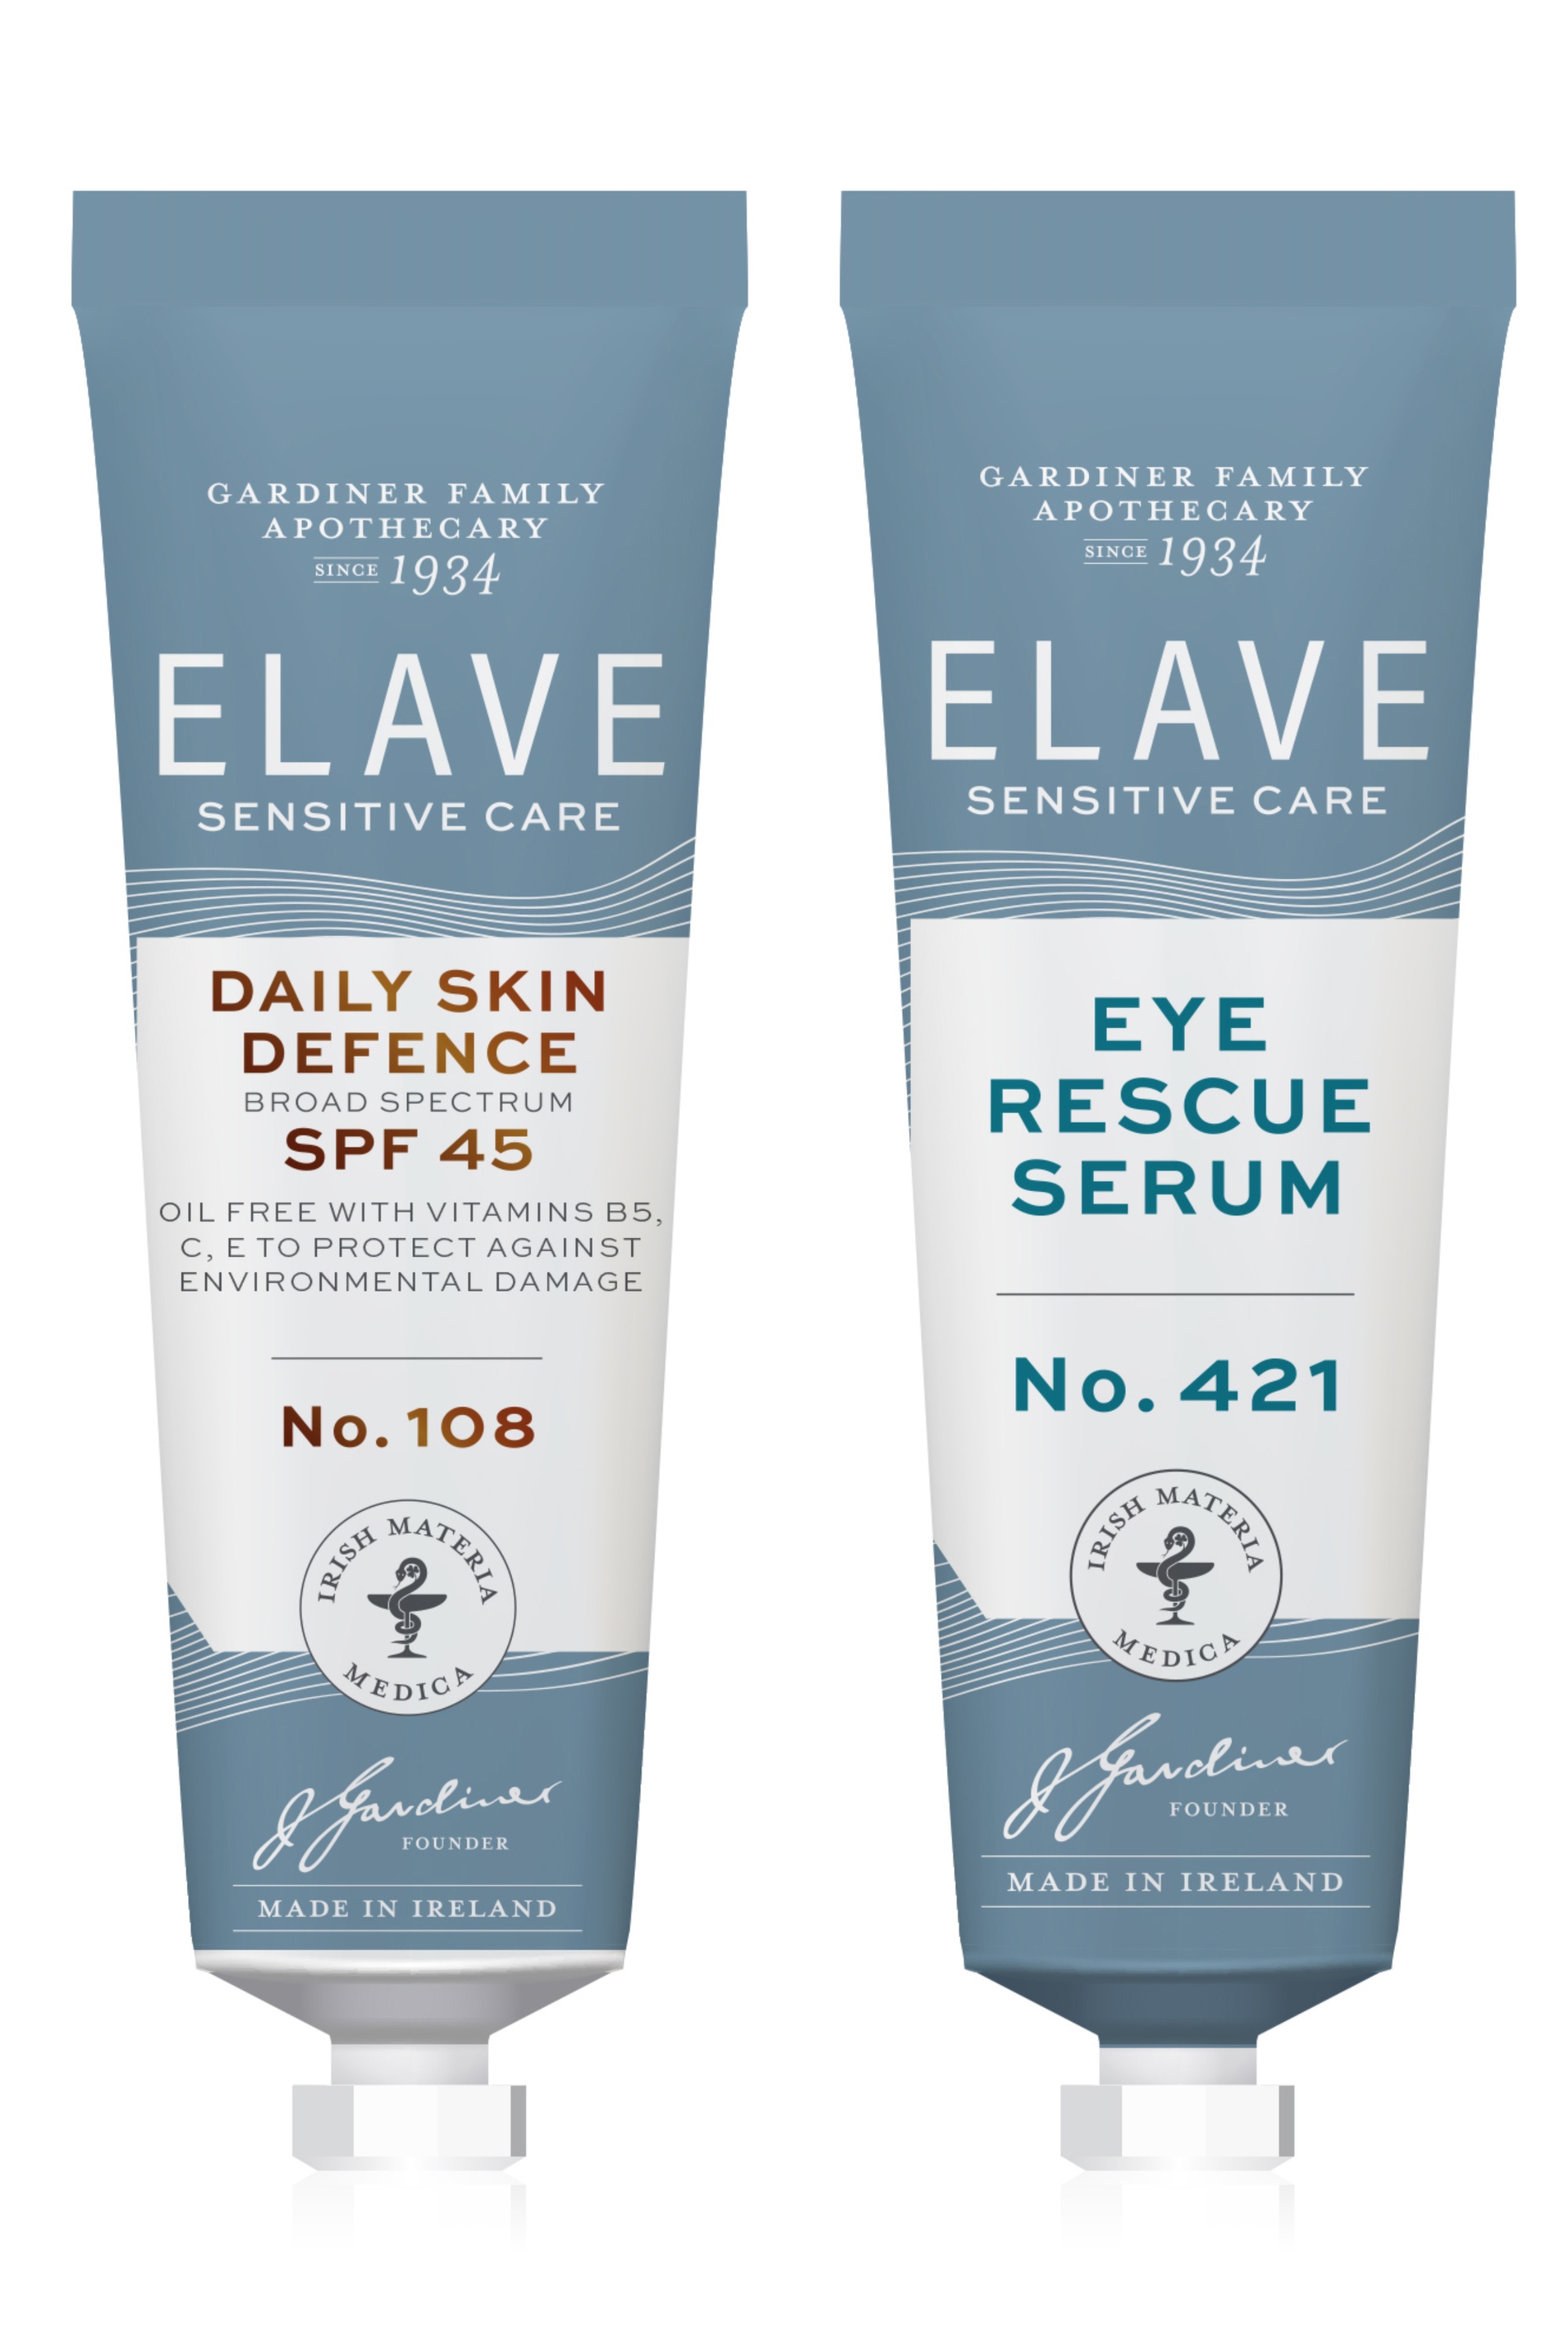 Elave eye care